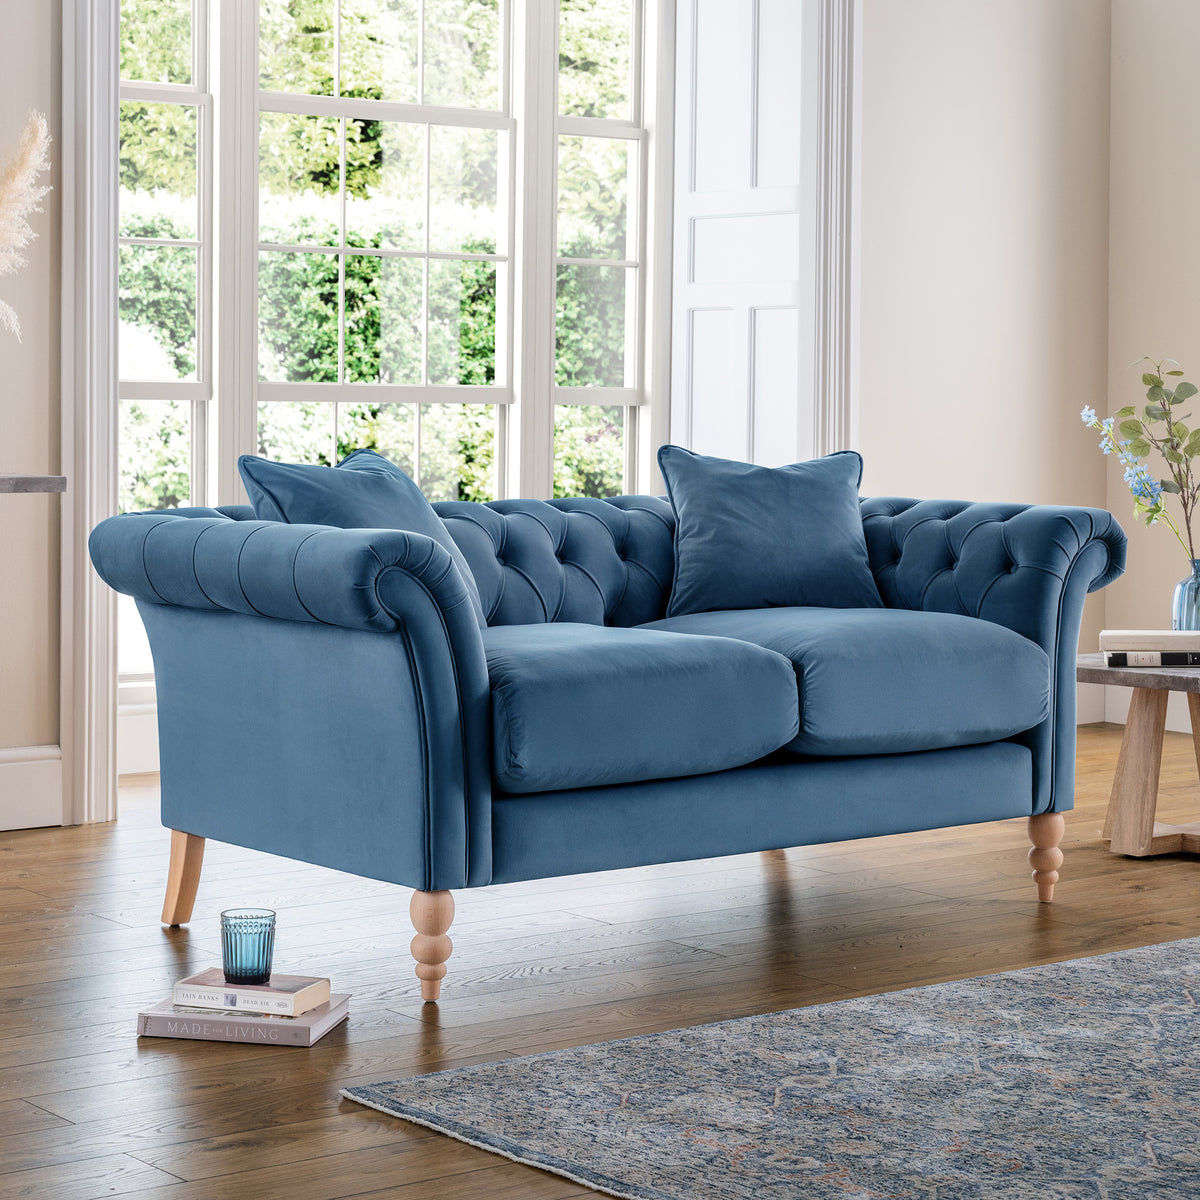 Balmoral Sky Blue Velvet Chesterfield 2 Seater Sofa for living room